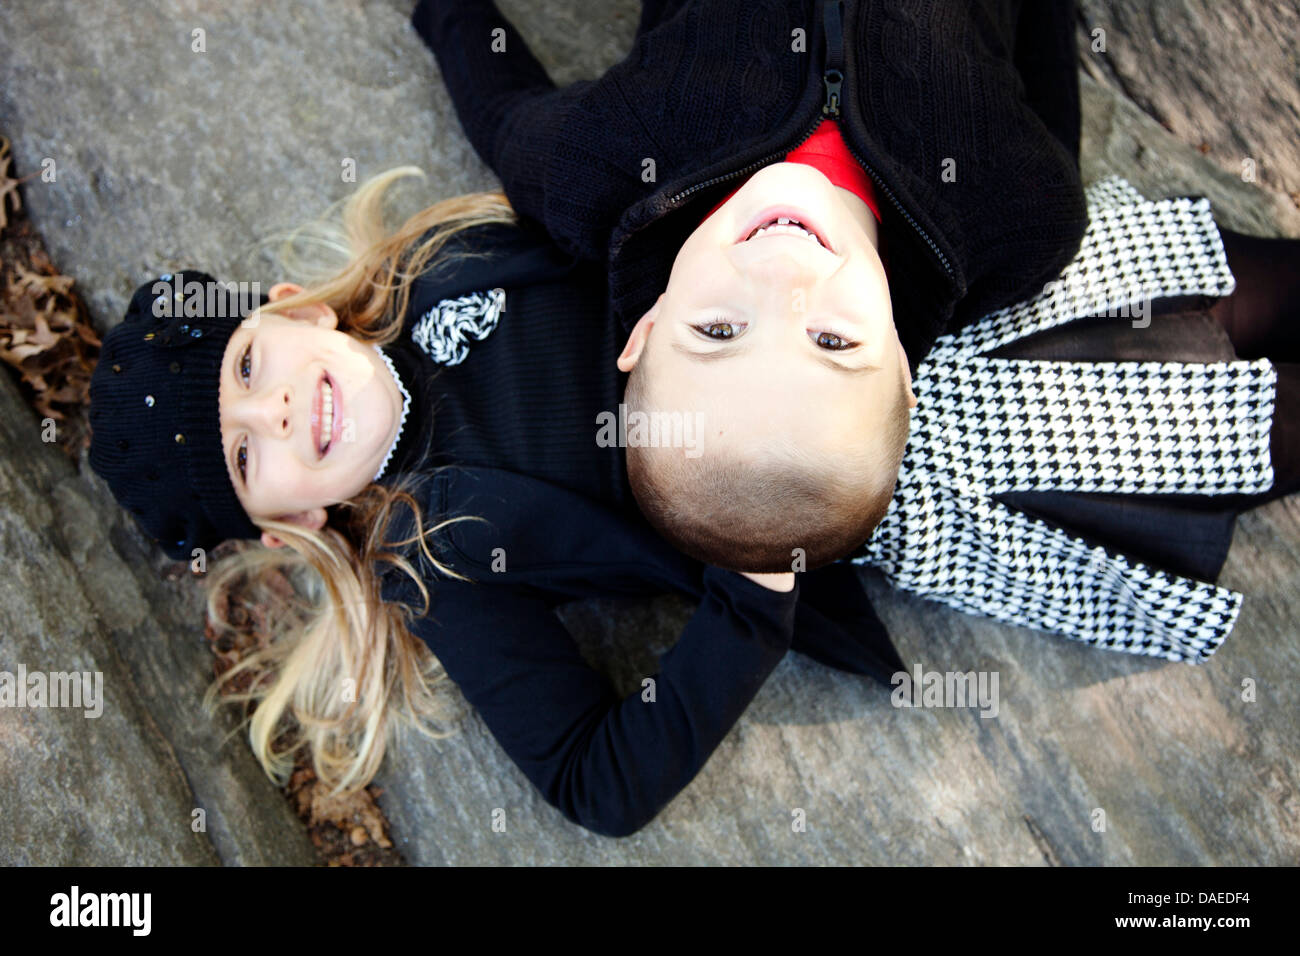 Lächelnd, jungen und Mädchen, die Verlegung auf Stein Ledge, High Angle View, Porträt Stockfoto